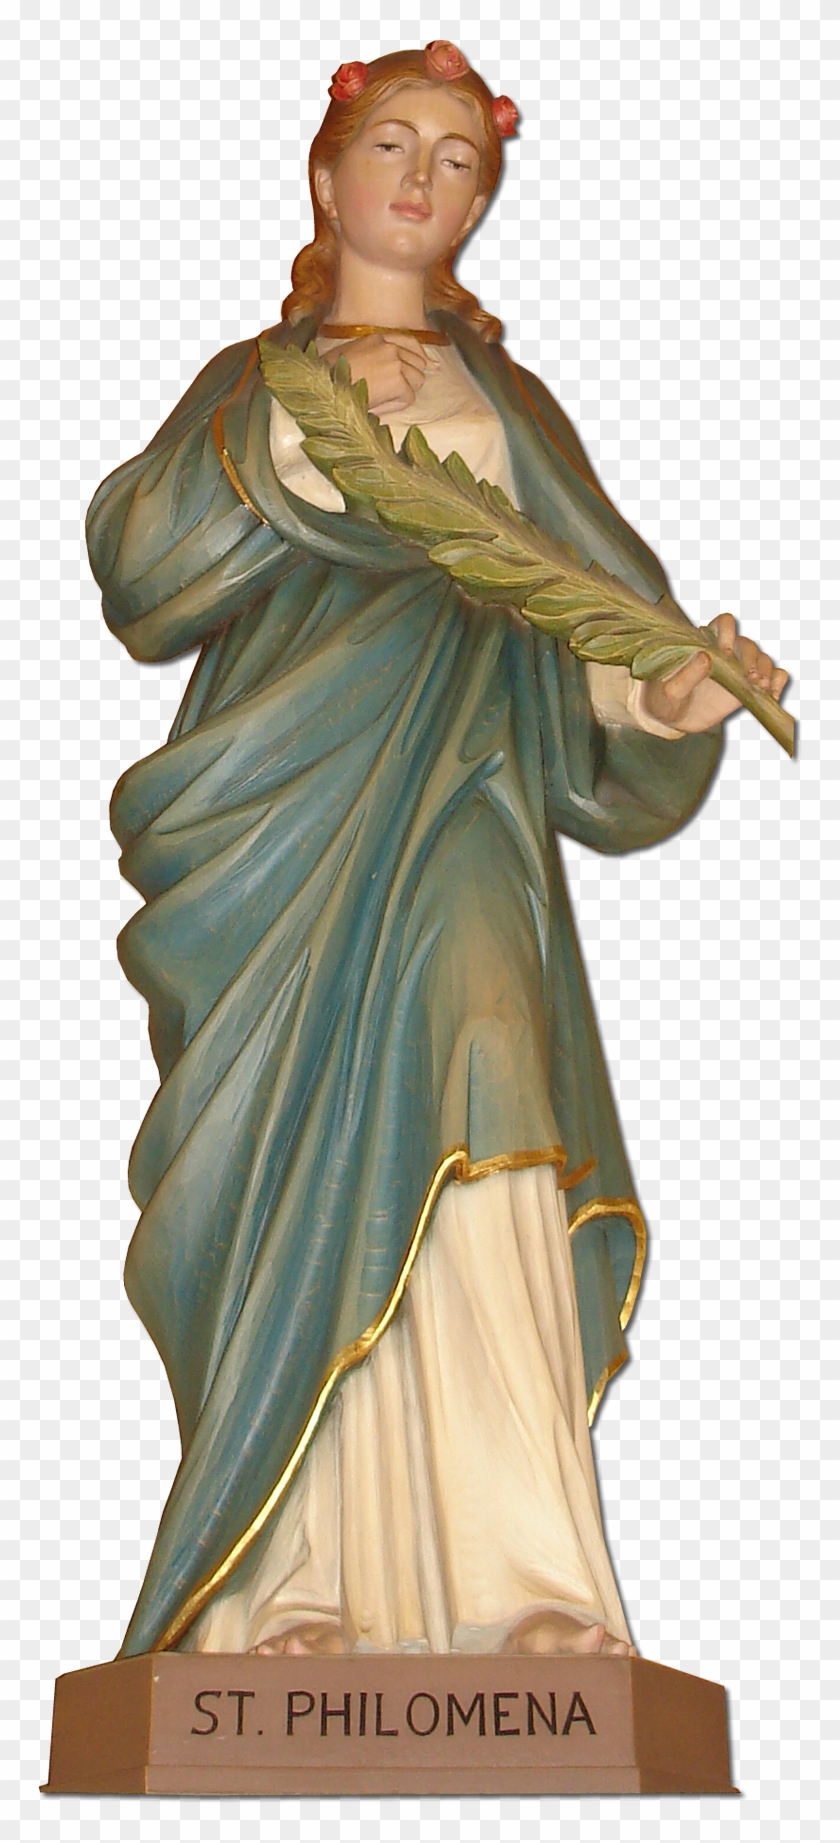 Saint Philomena Statue In Saint Philomena's Parish - Saint Philomena Clipart #3977405